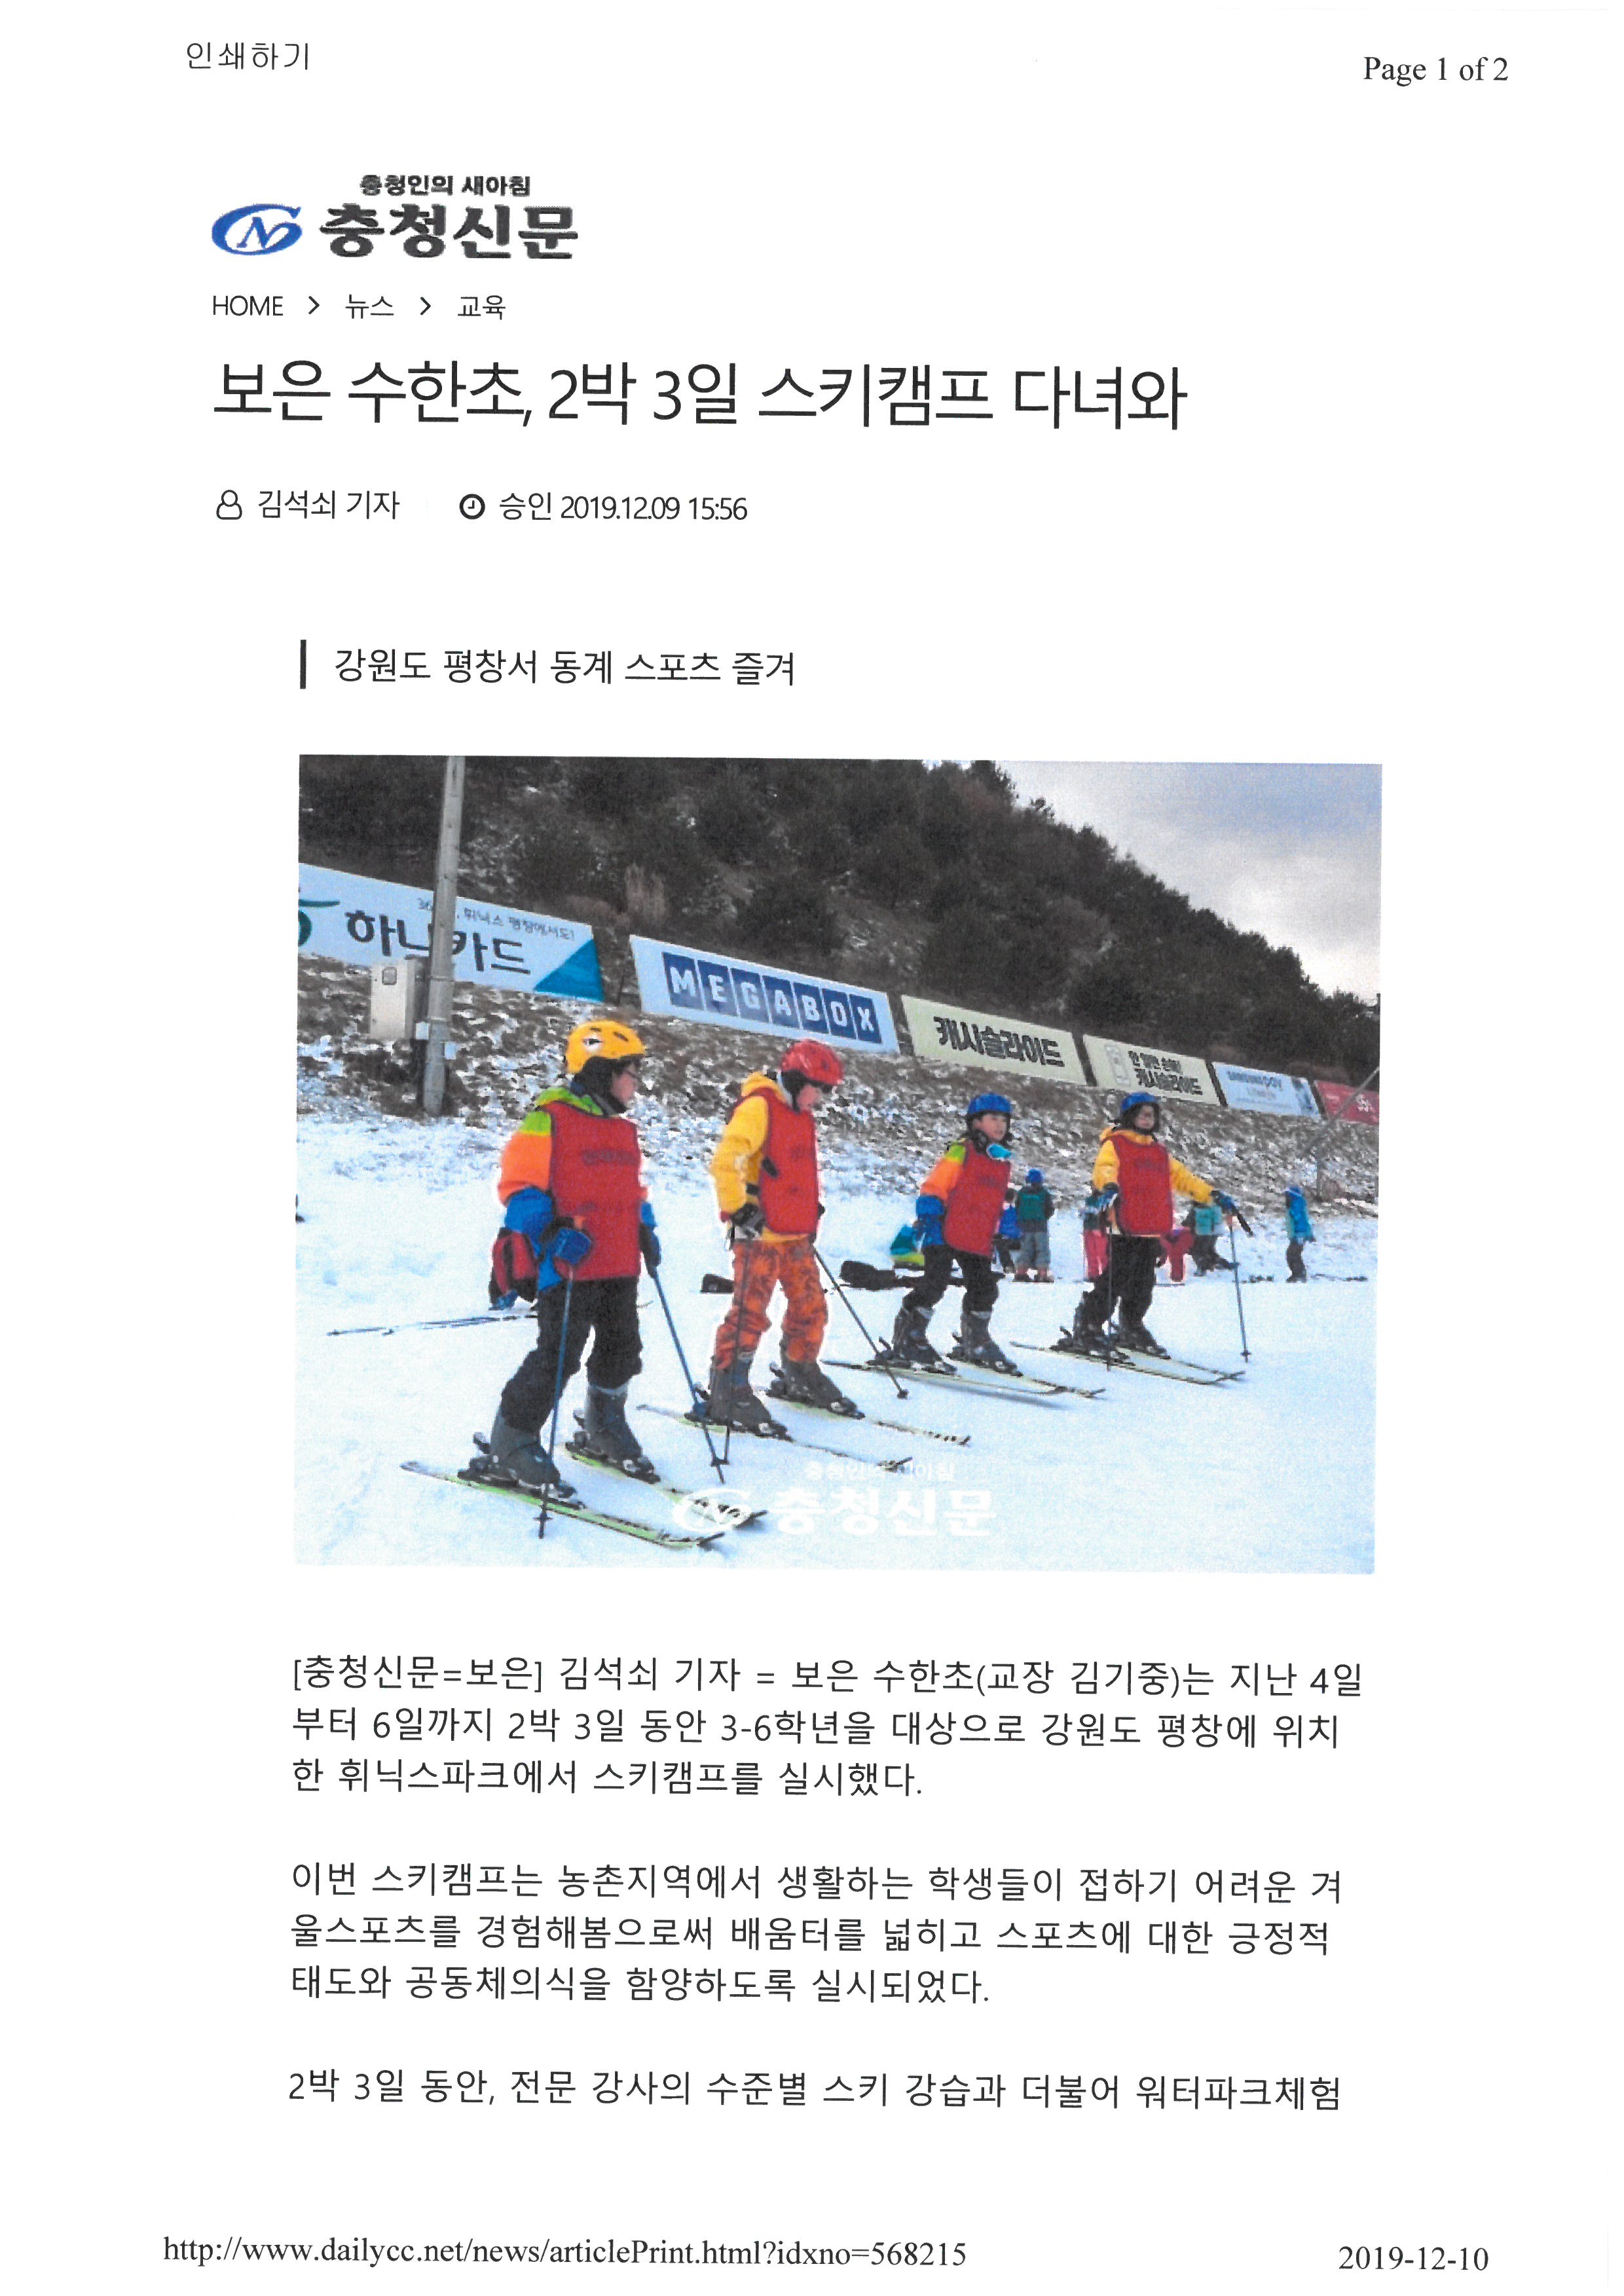 충청신문-스키캠프 (1)